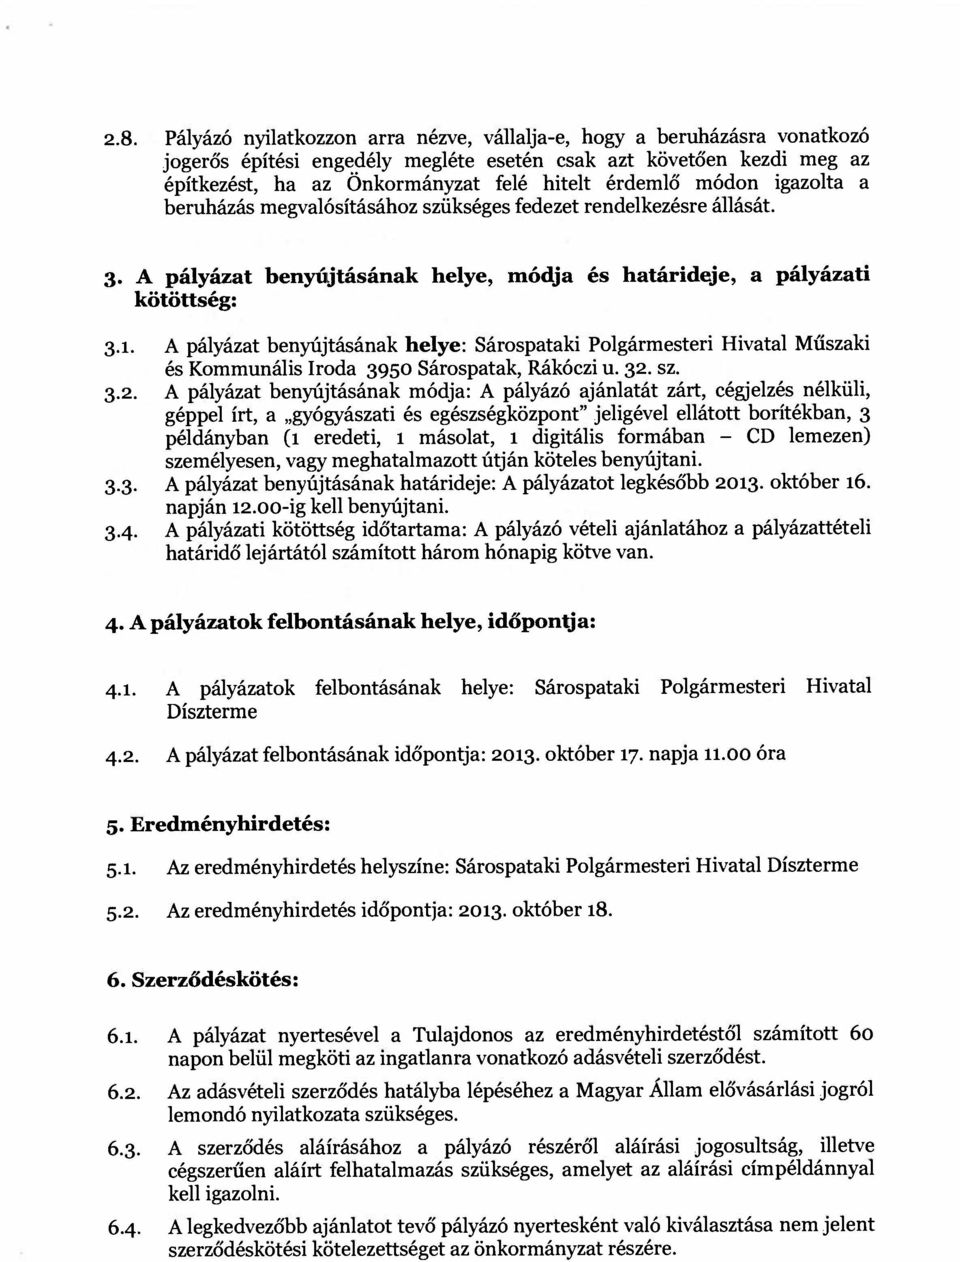 A pályázat benyújtásának helye: Sárospataki Polgármesteri Hivatal Műszaki és Kommunális Iroda 3950 Sárospatak, Rákóczi u. 32.